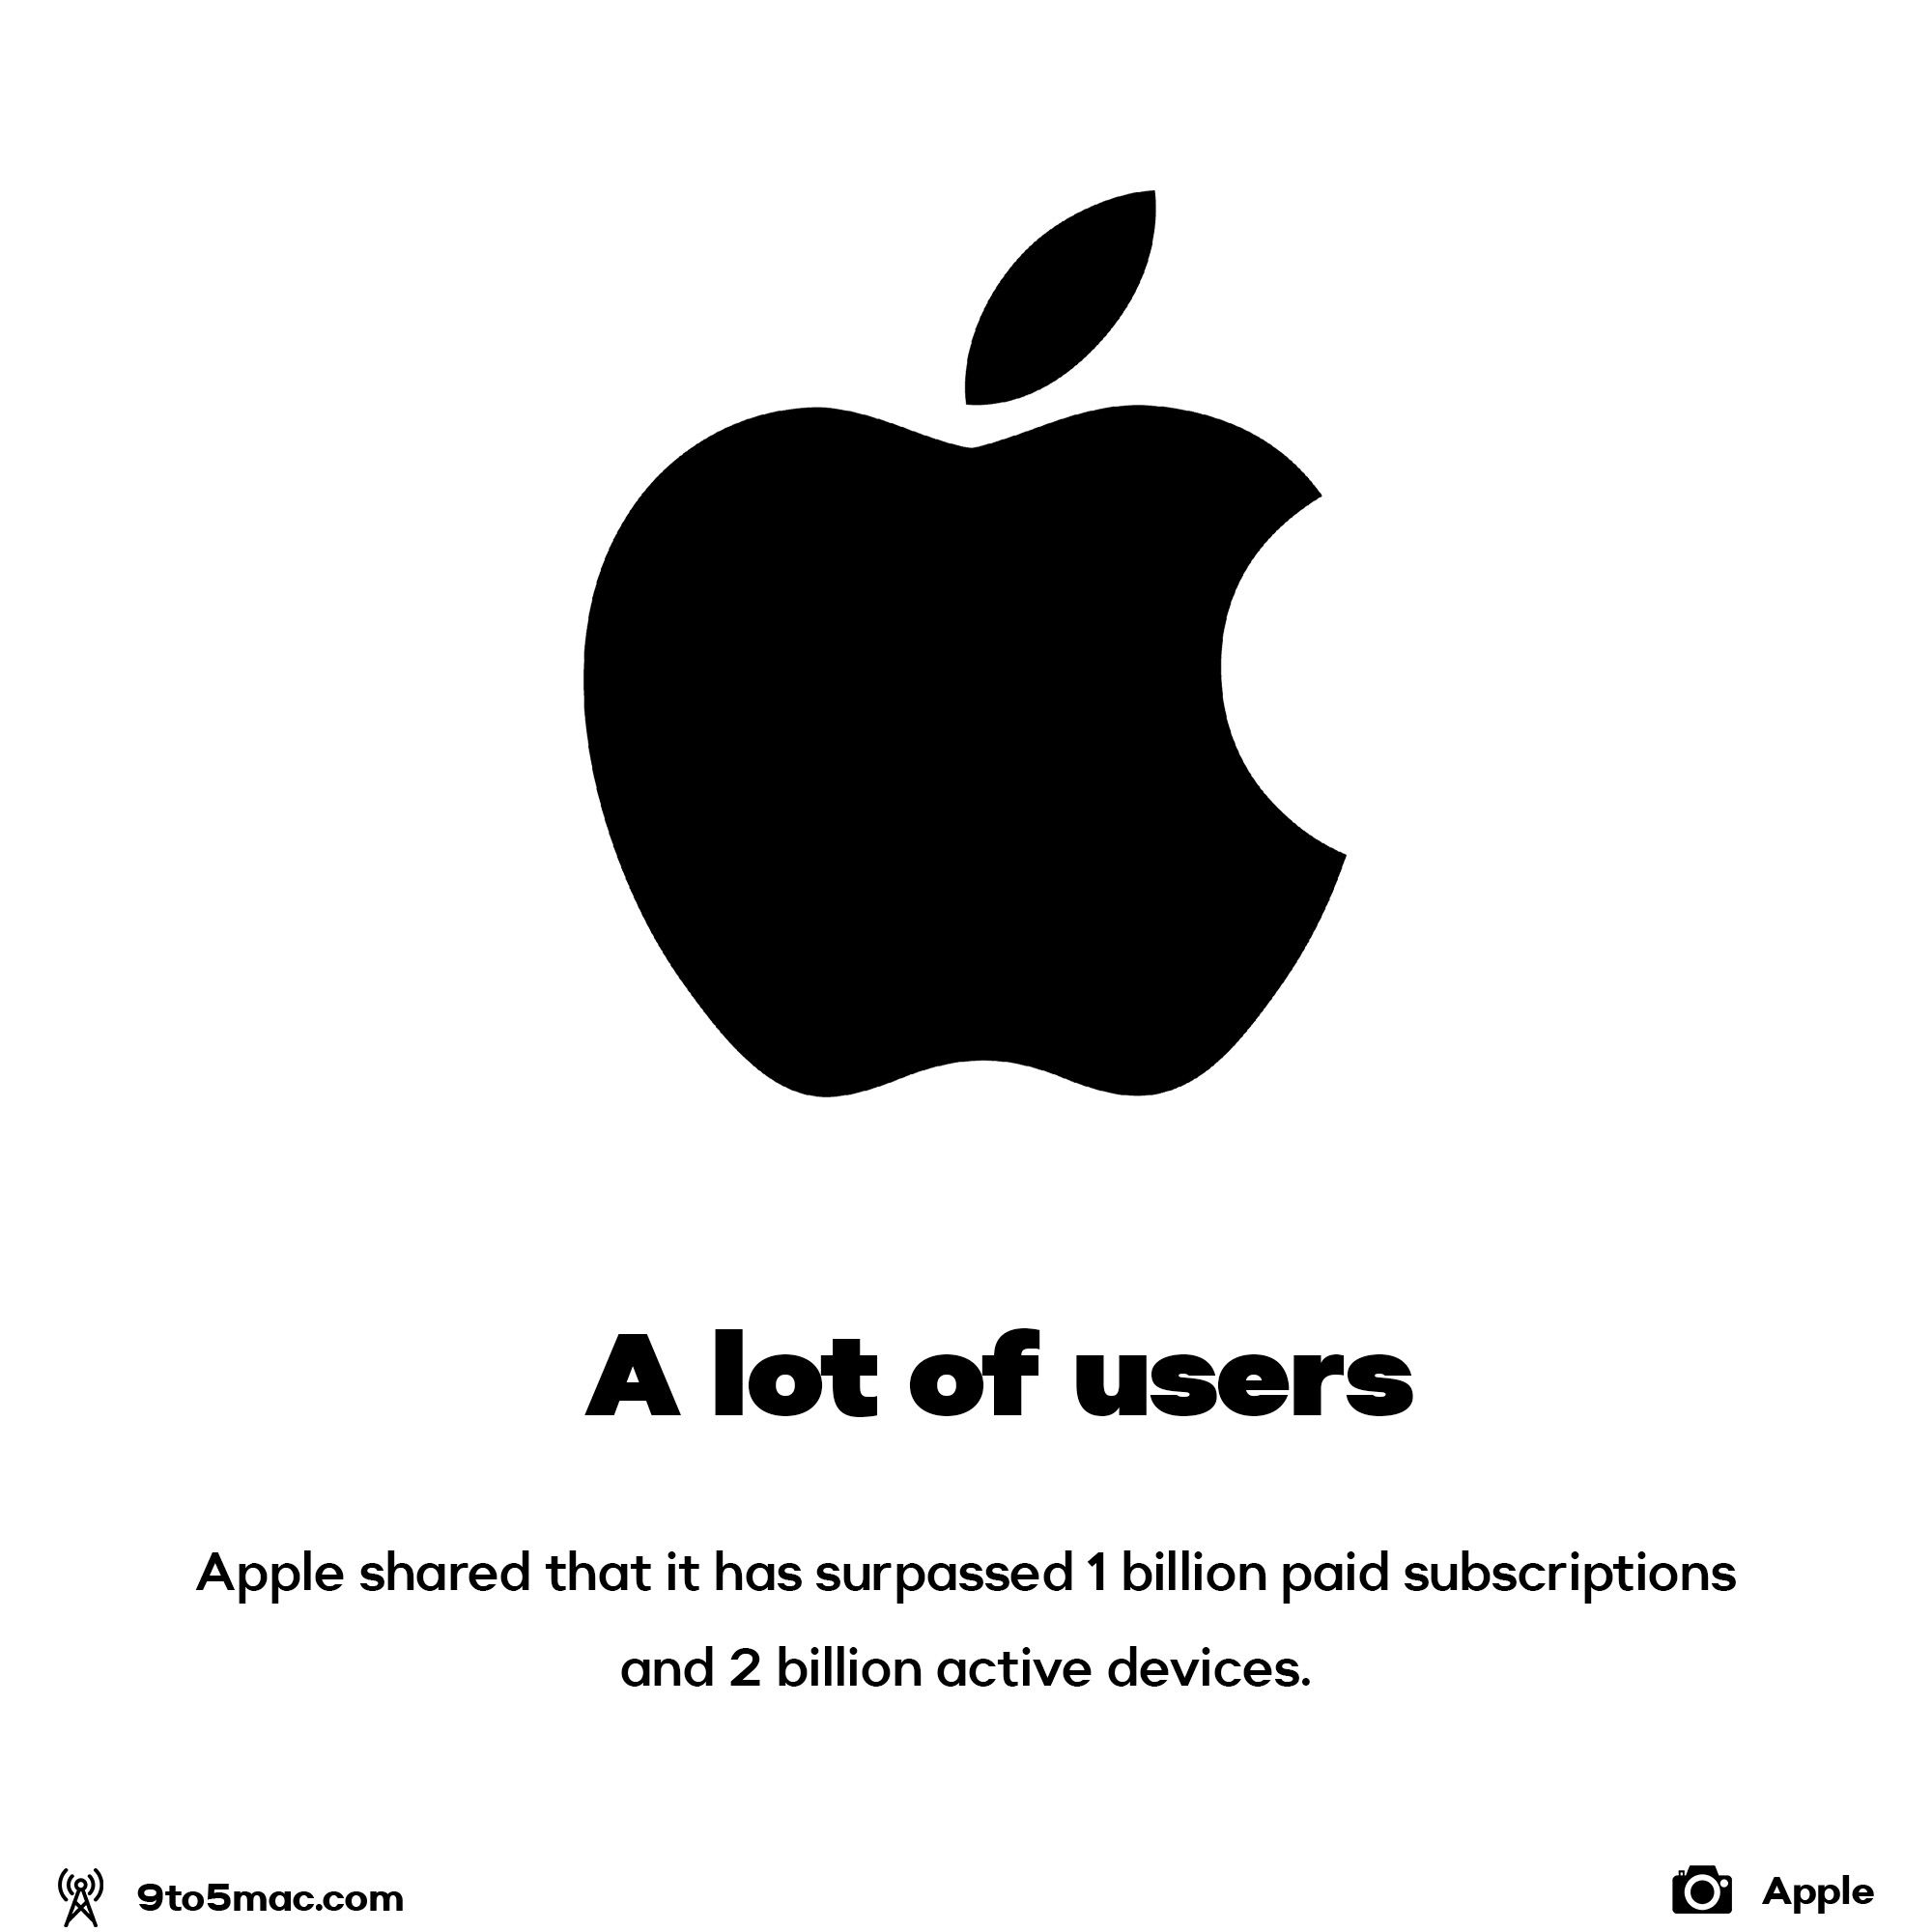 Apple has 2 billion active devices